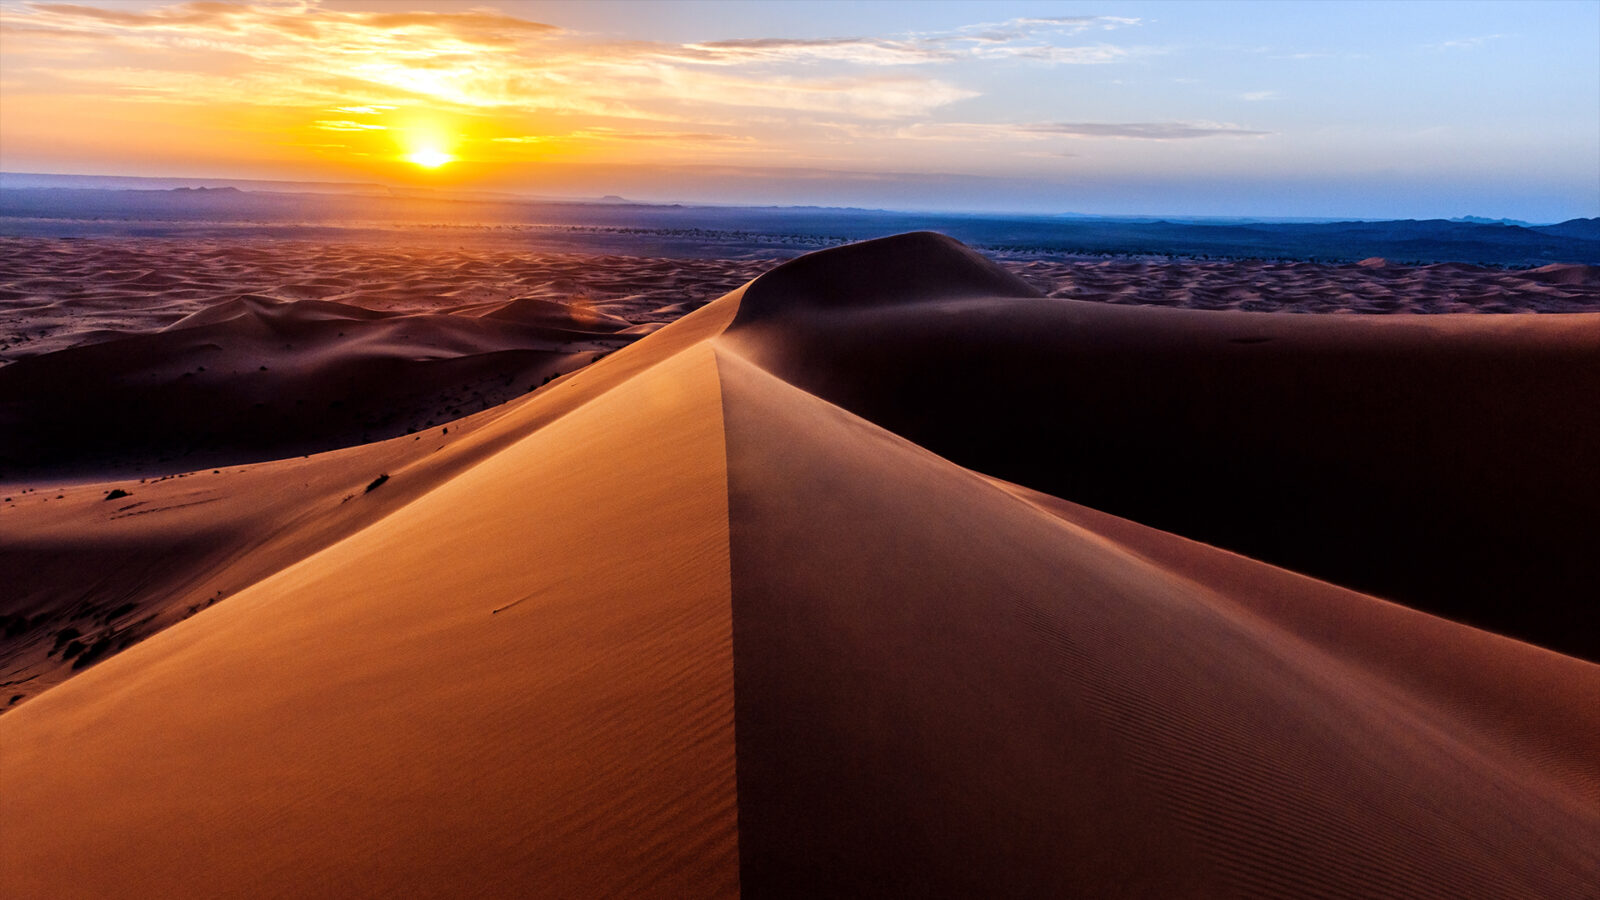 Sahara Desert star sand dune